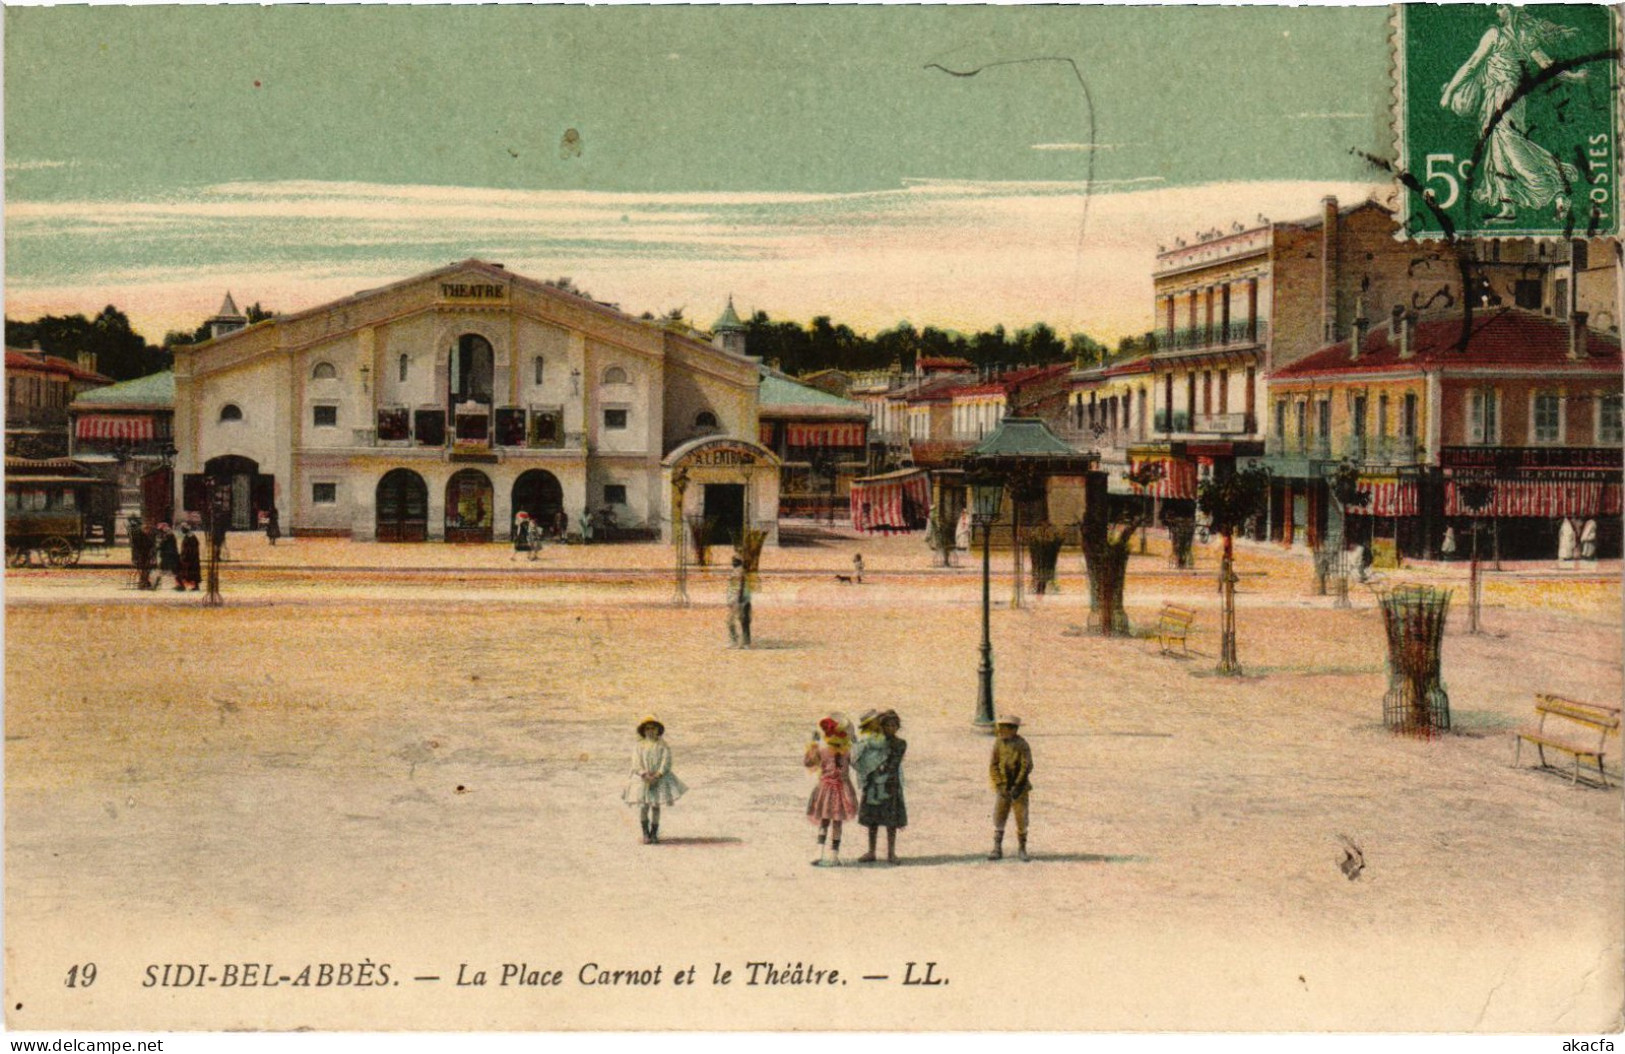 CPA AK SIDI-BEL-ABBES Place Carnot - Theatre ALGERIA (1389597) - Sidi-bel-Abbes